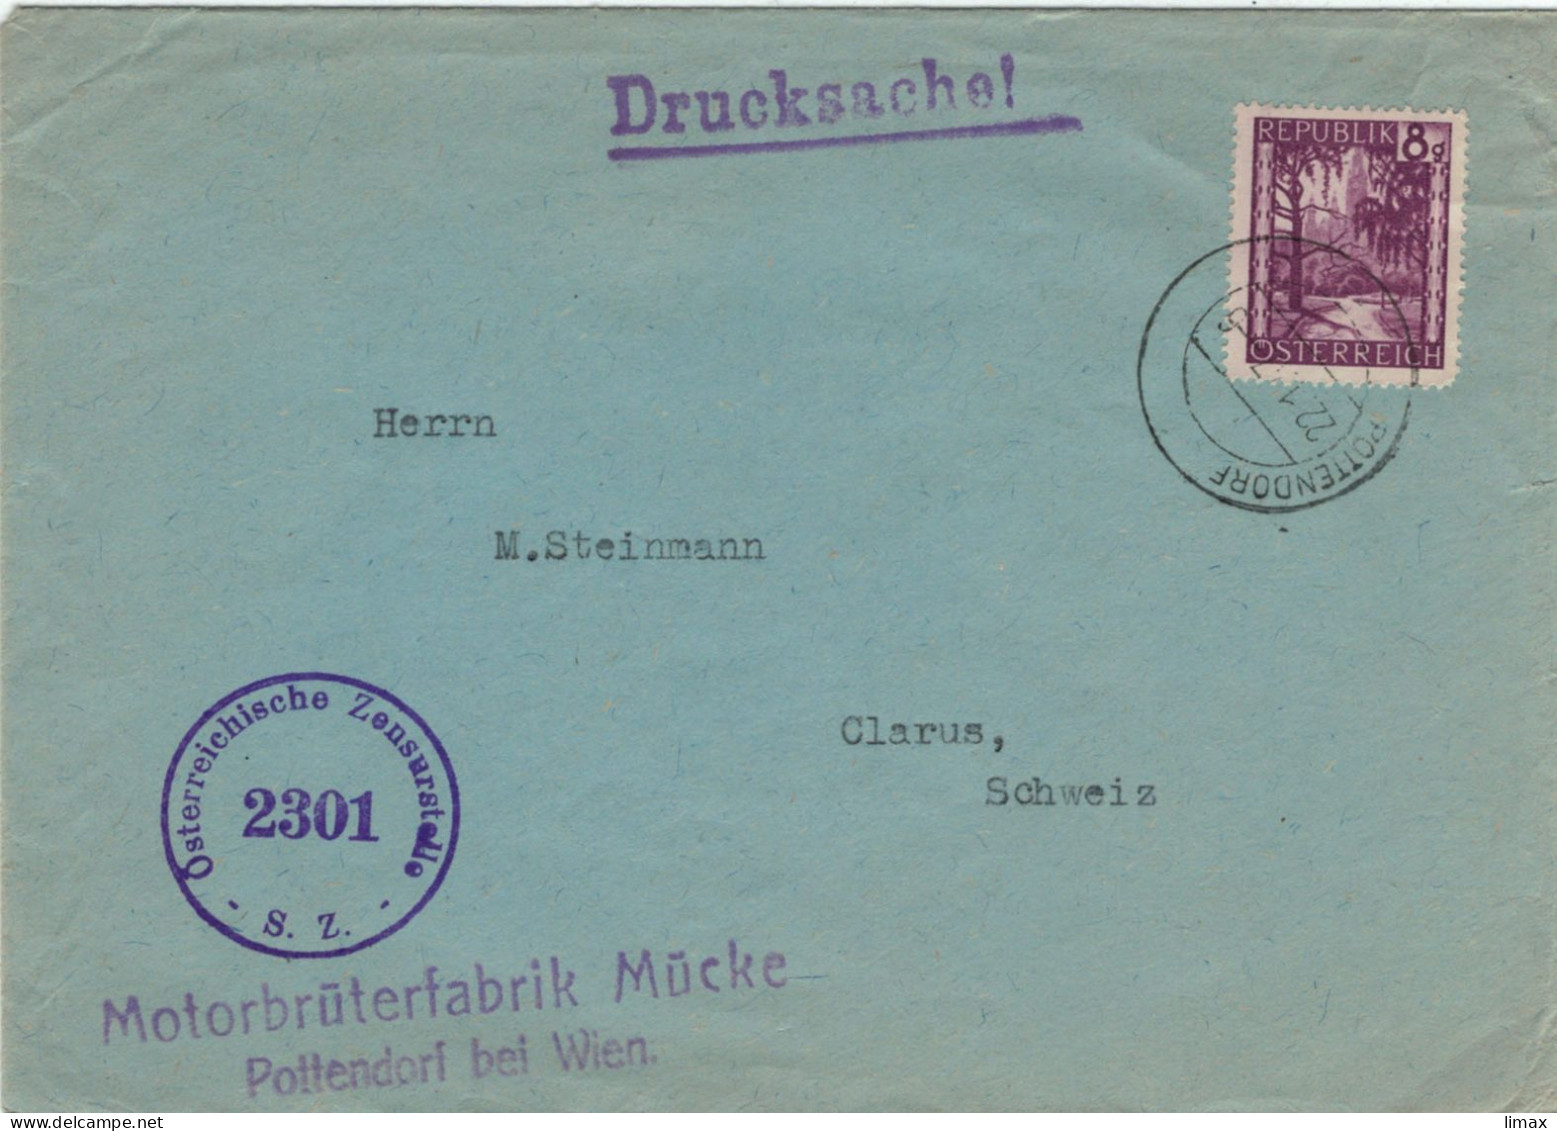 Motorbrüterfabrik Mücke Pottendorf Bei Wien 1947 Zensur 2301 > Glarus - Geflügelzucht Tierschutz Tierleid Skandale - Briefe U. Dokumente